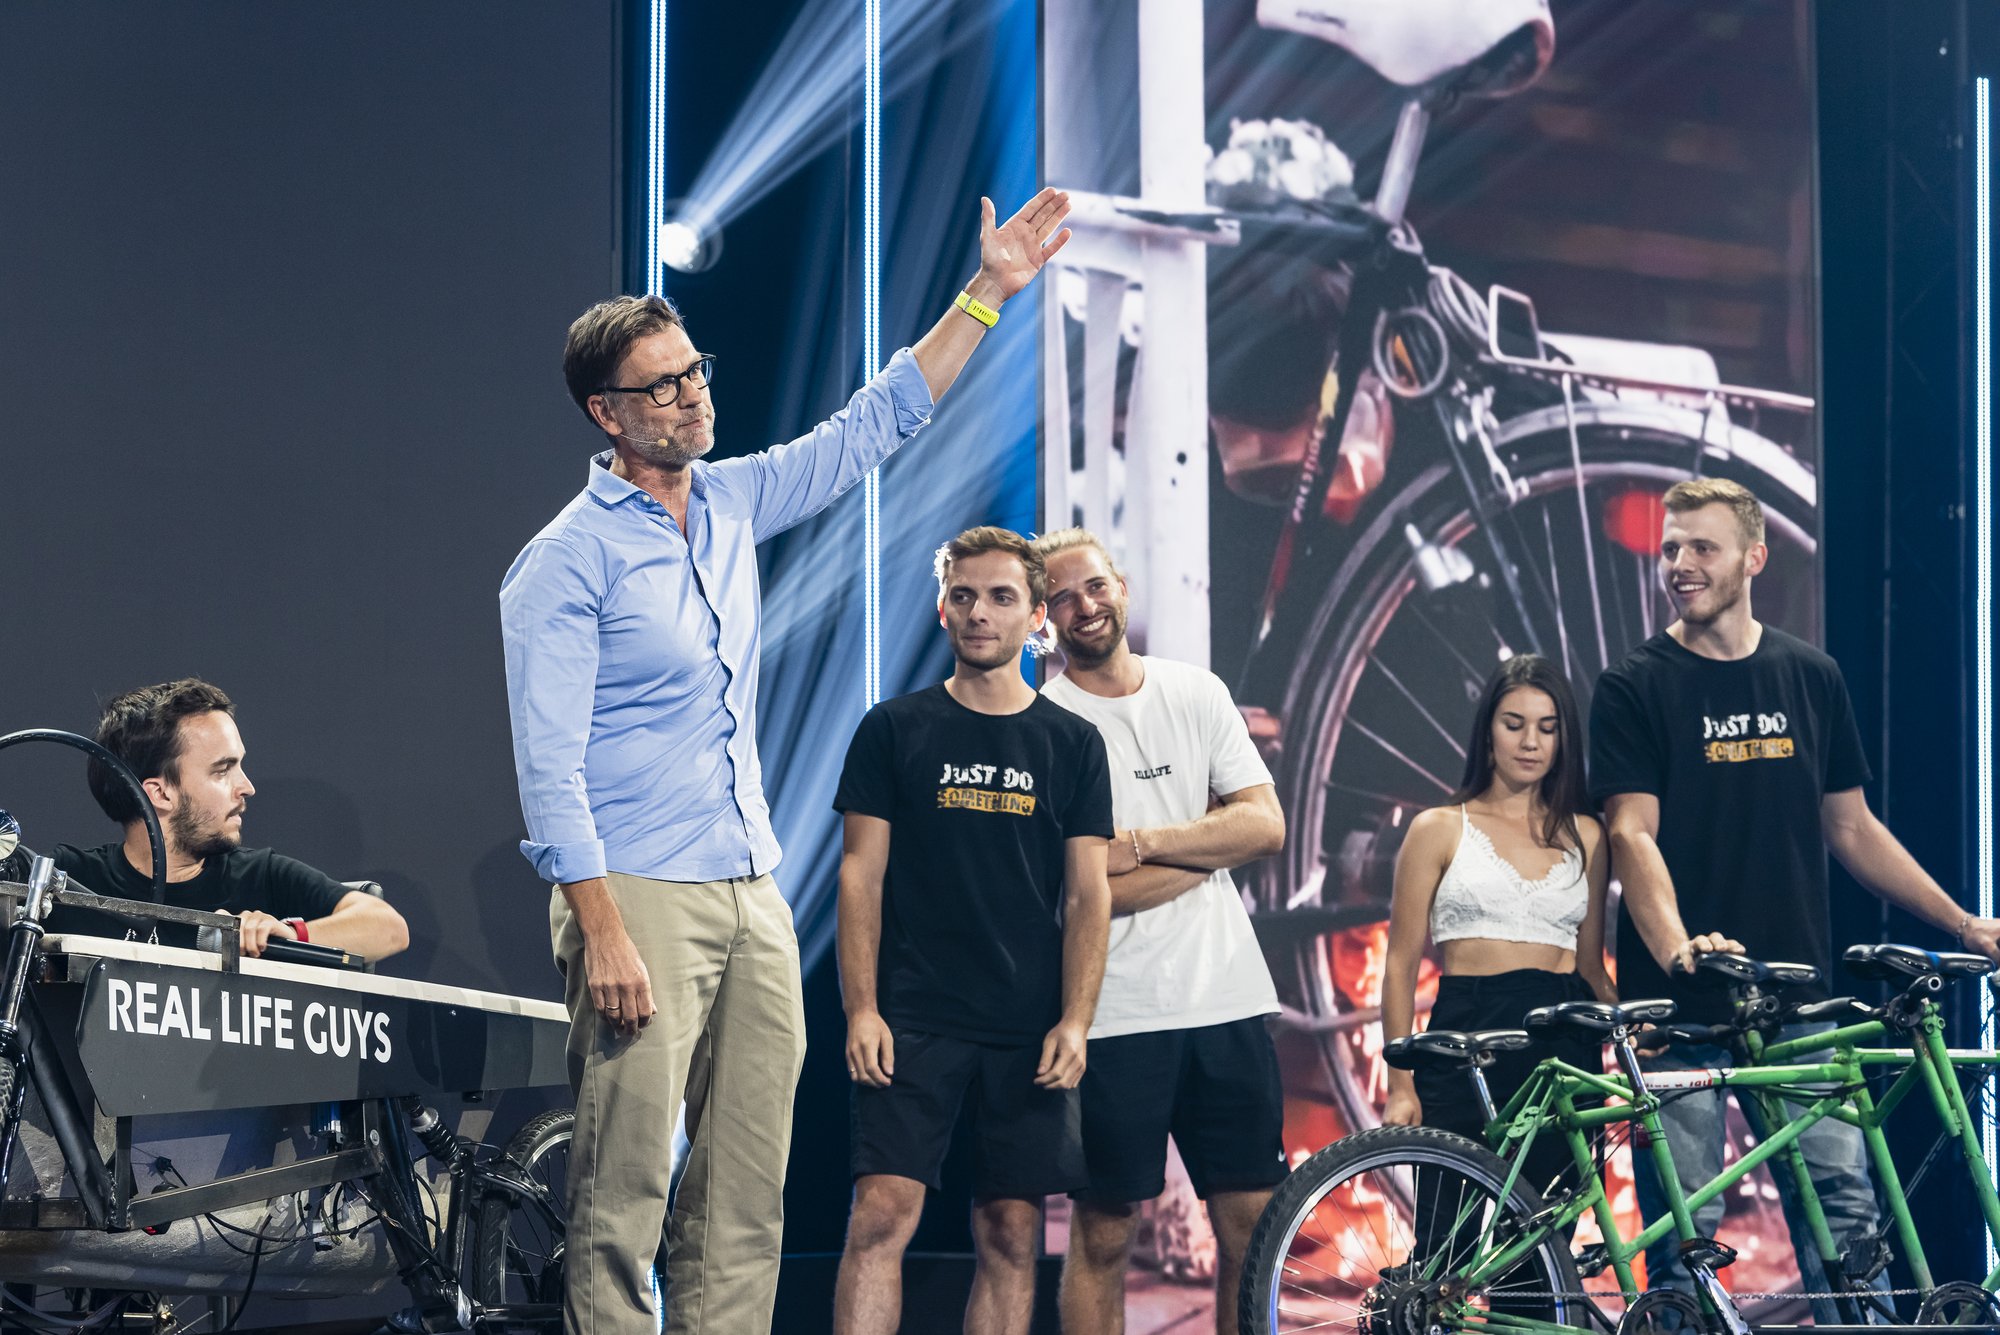 Personen stehen auf einer Bühne, neben ihnen ein Fahrrad auf dem der Schriftzug "Real Life Guys" steht.